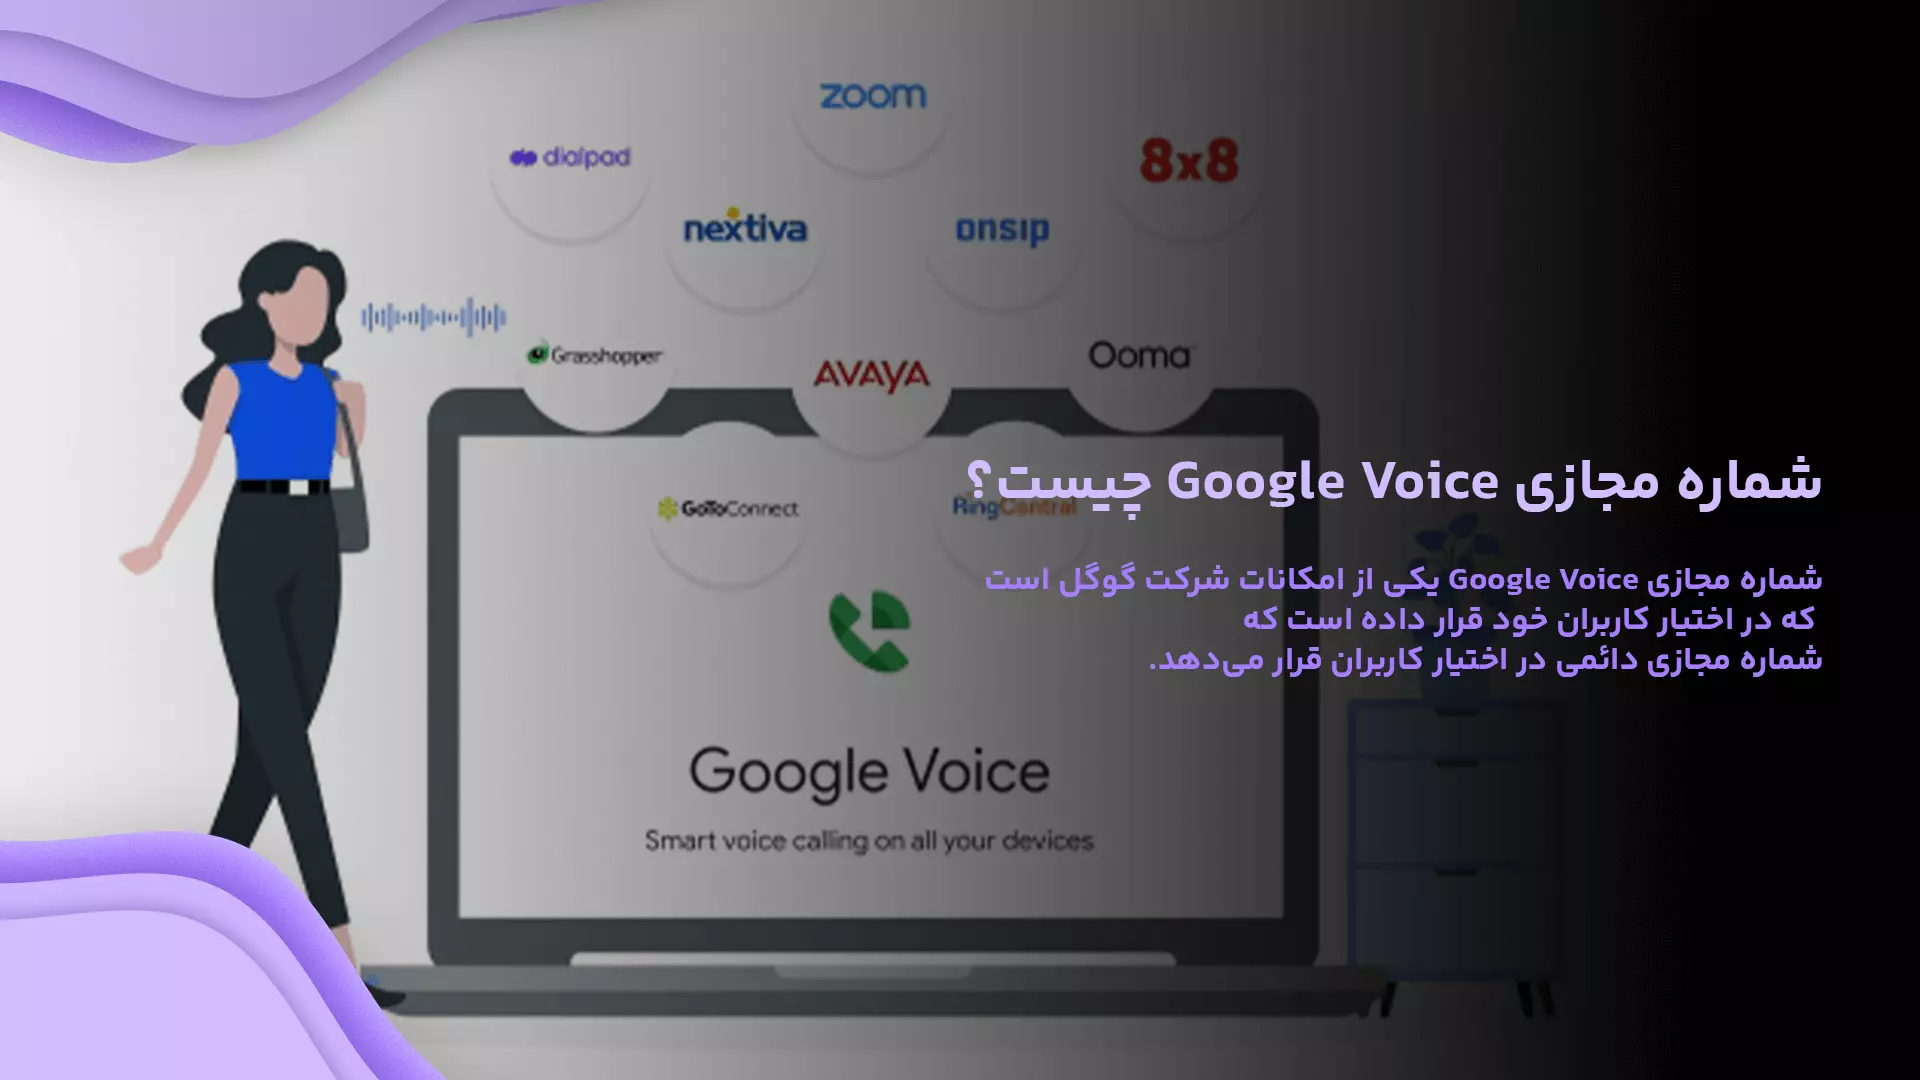 شماره مجازی Google Voice چیست؟